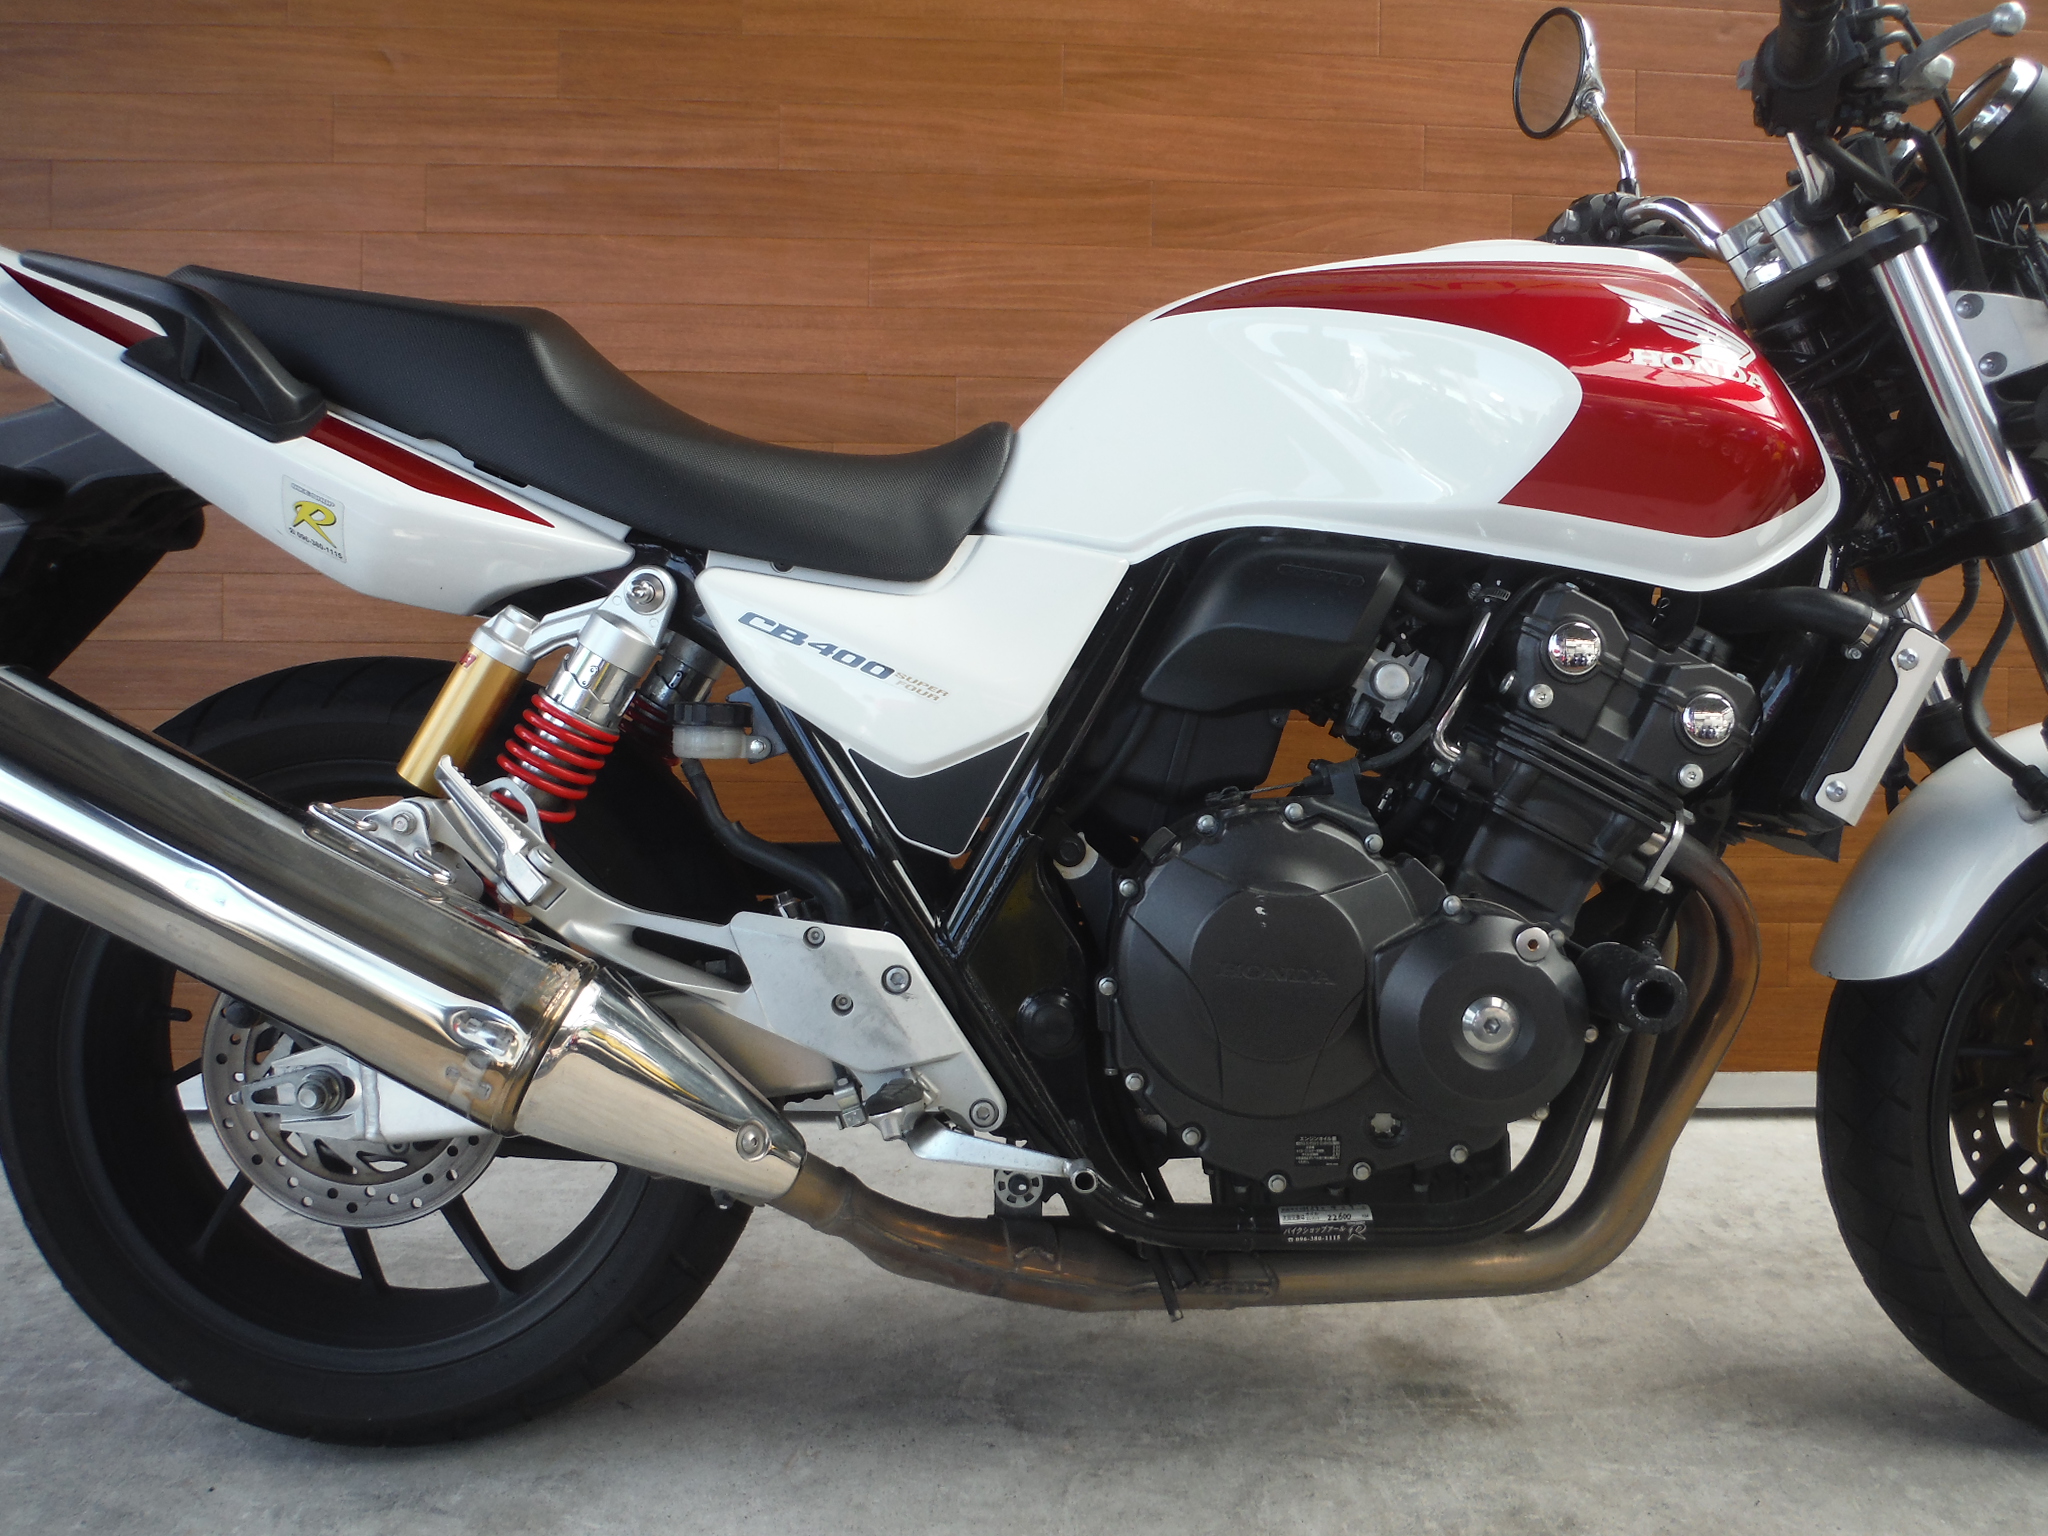 熊本中古車バイク情報 ホンダ Cb400sf 400 14年モデル 白赤 熊本のバイクショップ アール バイクの新車 中古車販売や買取 レンタルバイクのことならおまかせください